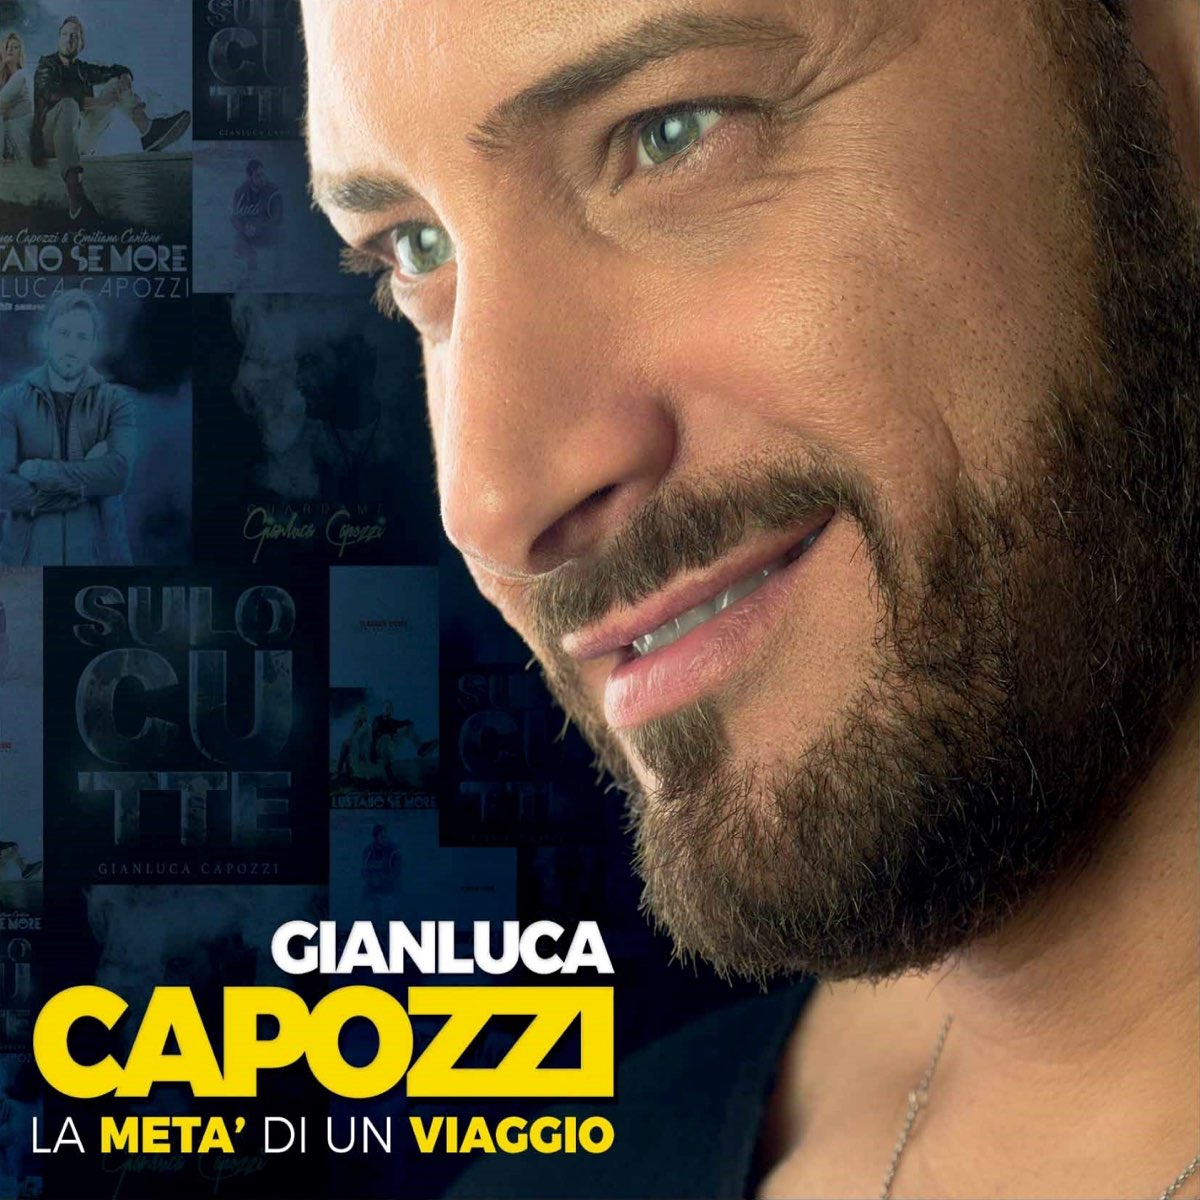 ‎La metà di un viaggio - Album di Gianluca Capozzi - Apple Music